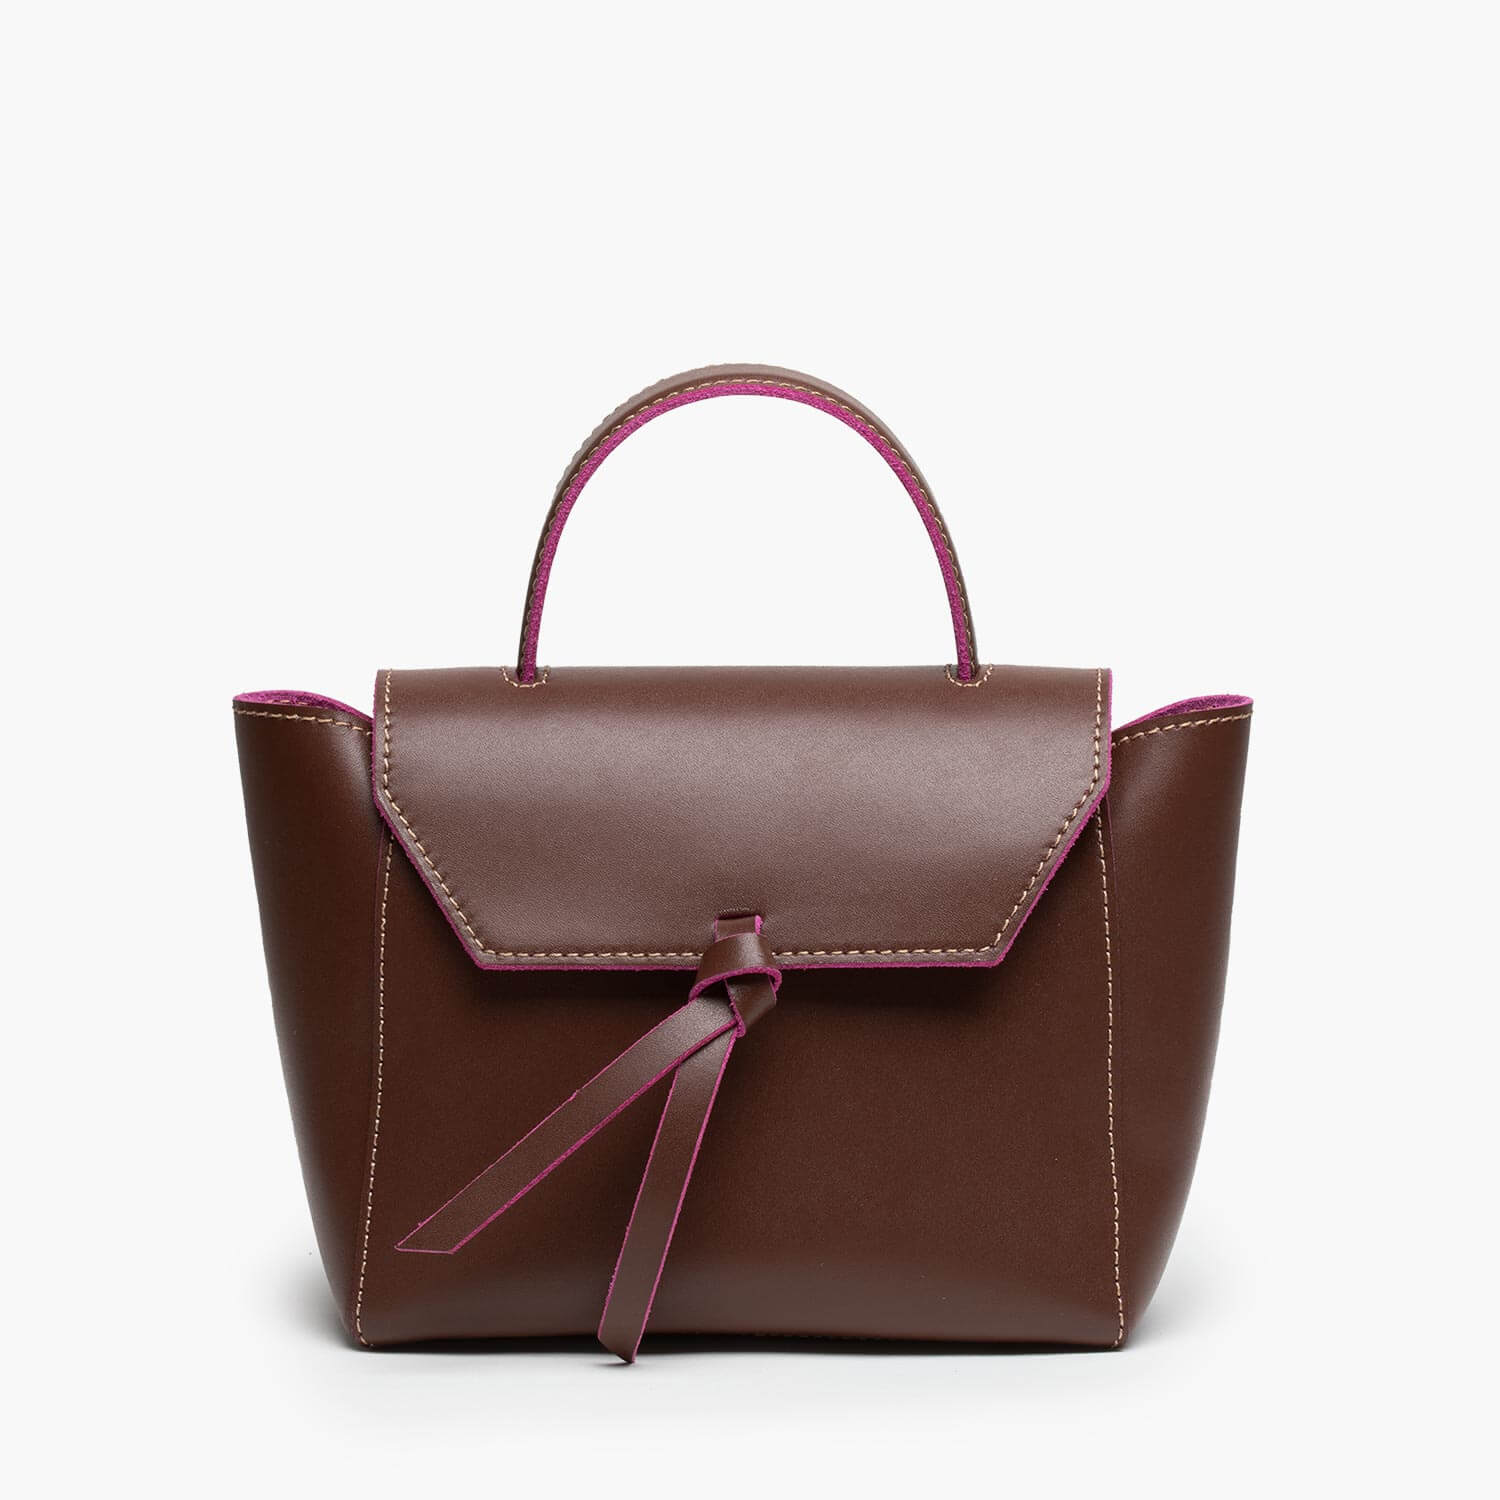 VINTAGE Kate Spade Leather Satchel Bag Purse 11”x8” LIGHT BEIGE VGUC | eBay